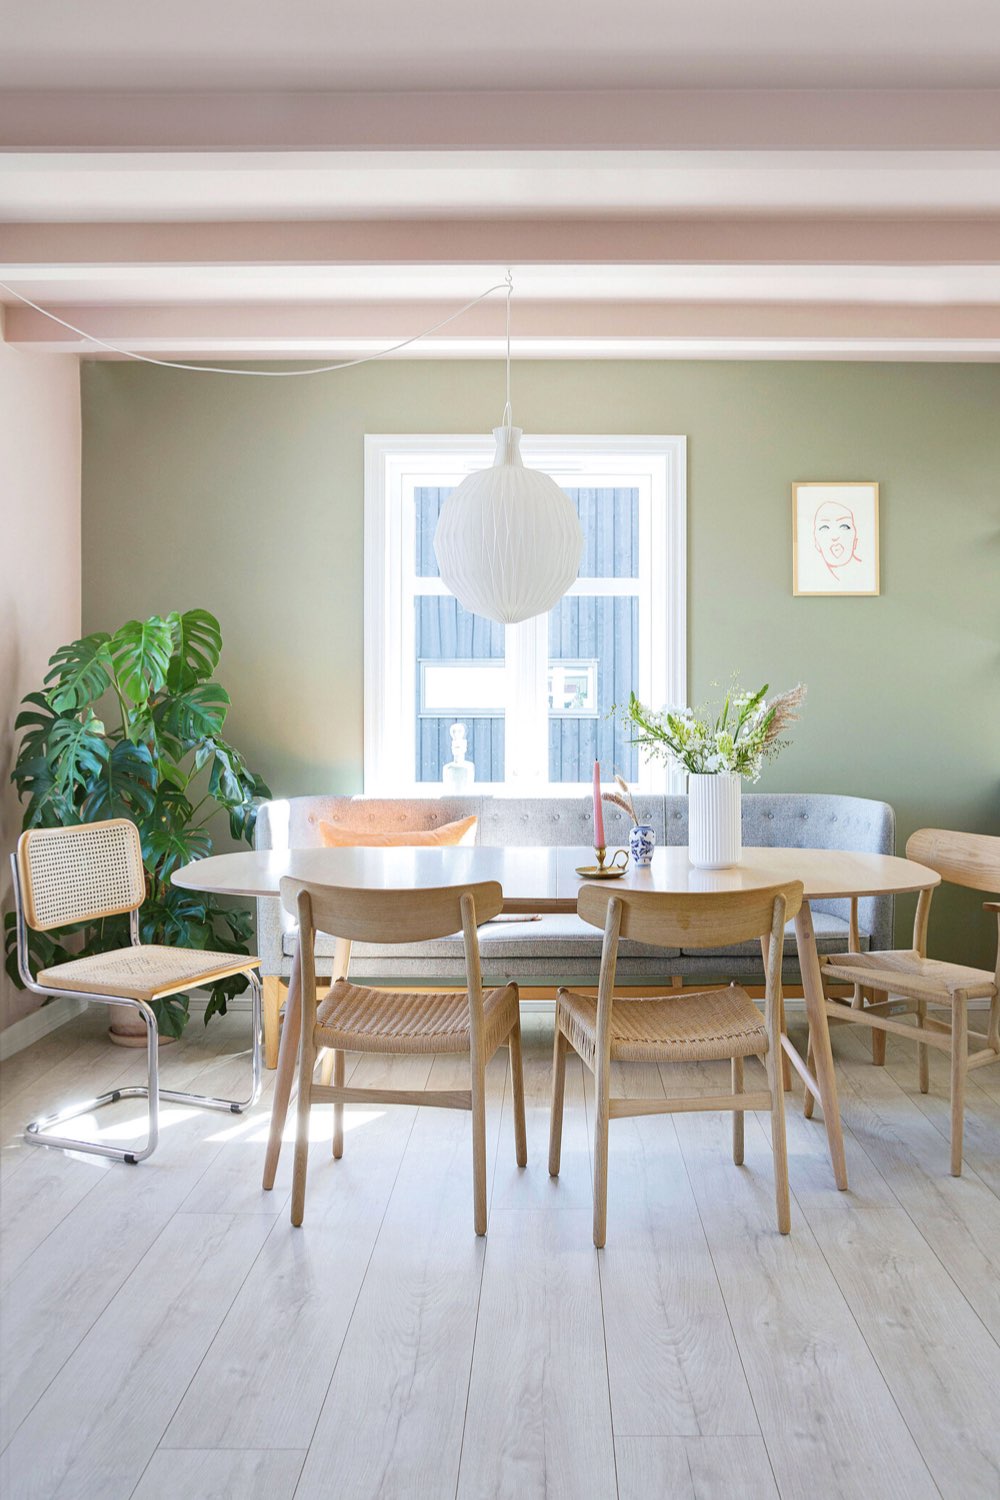 interieur deco peinture pastel salle à manger plafond poutres couleur chaise en bois clair banquette grise esprit scandinave